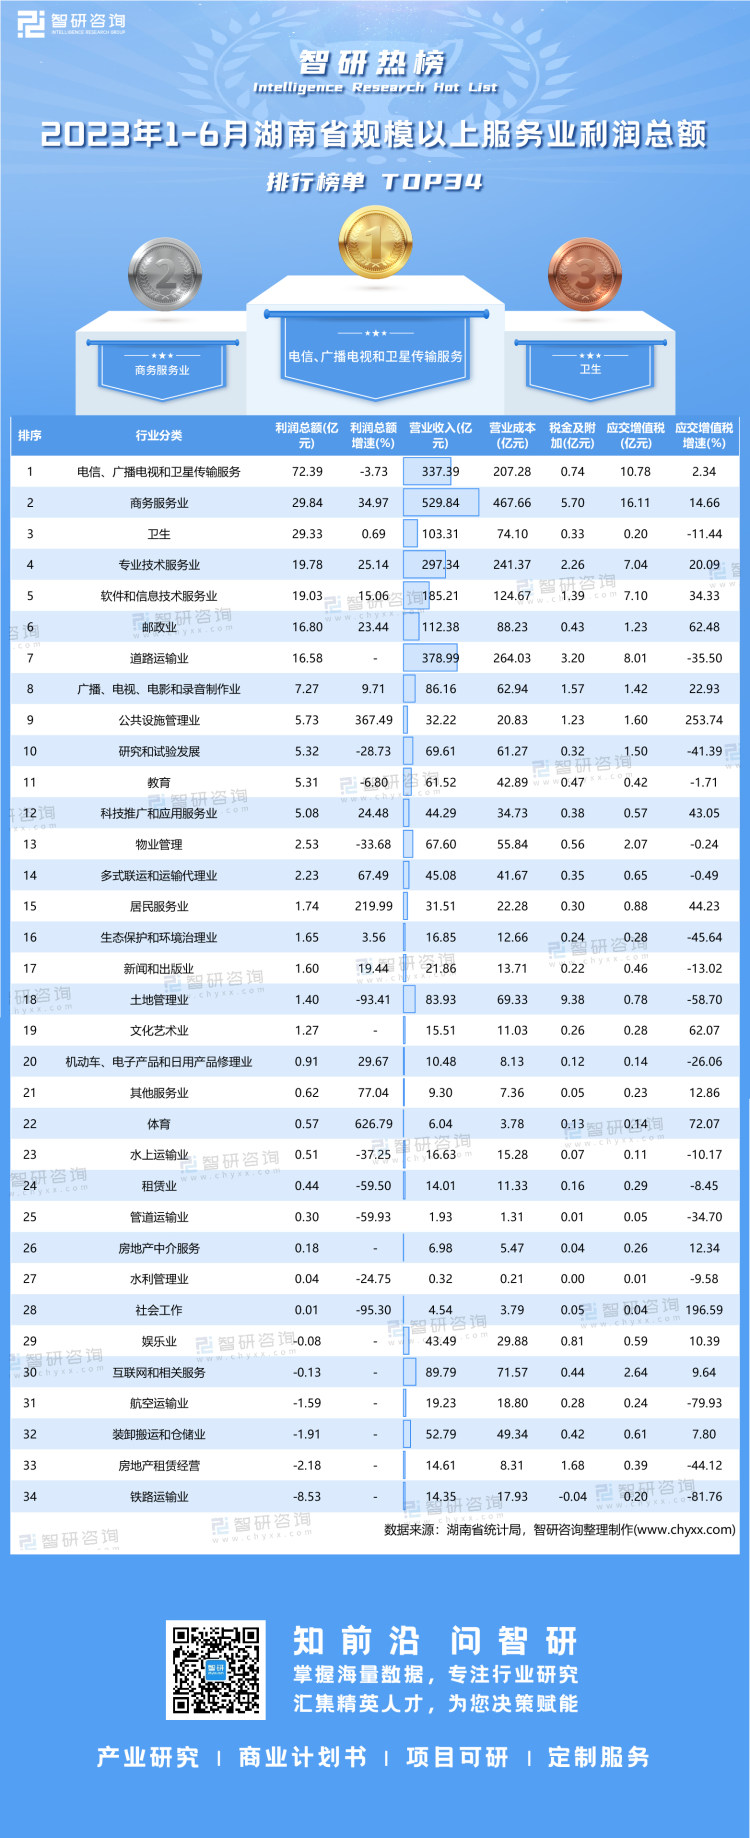 0830：2023年1-6月湖南省规模以上服务业利润总额-二维码（万桃红）